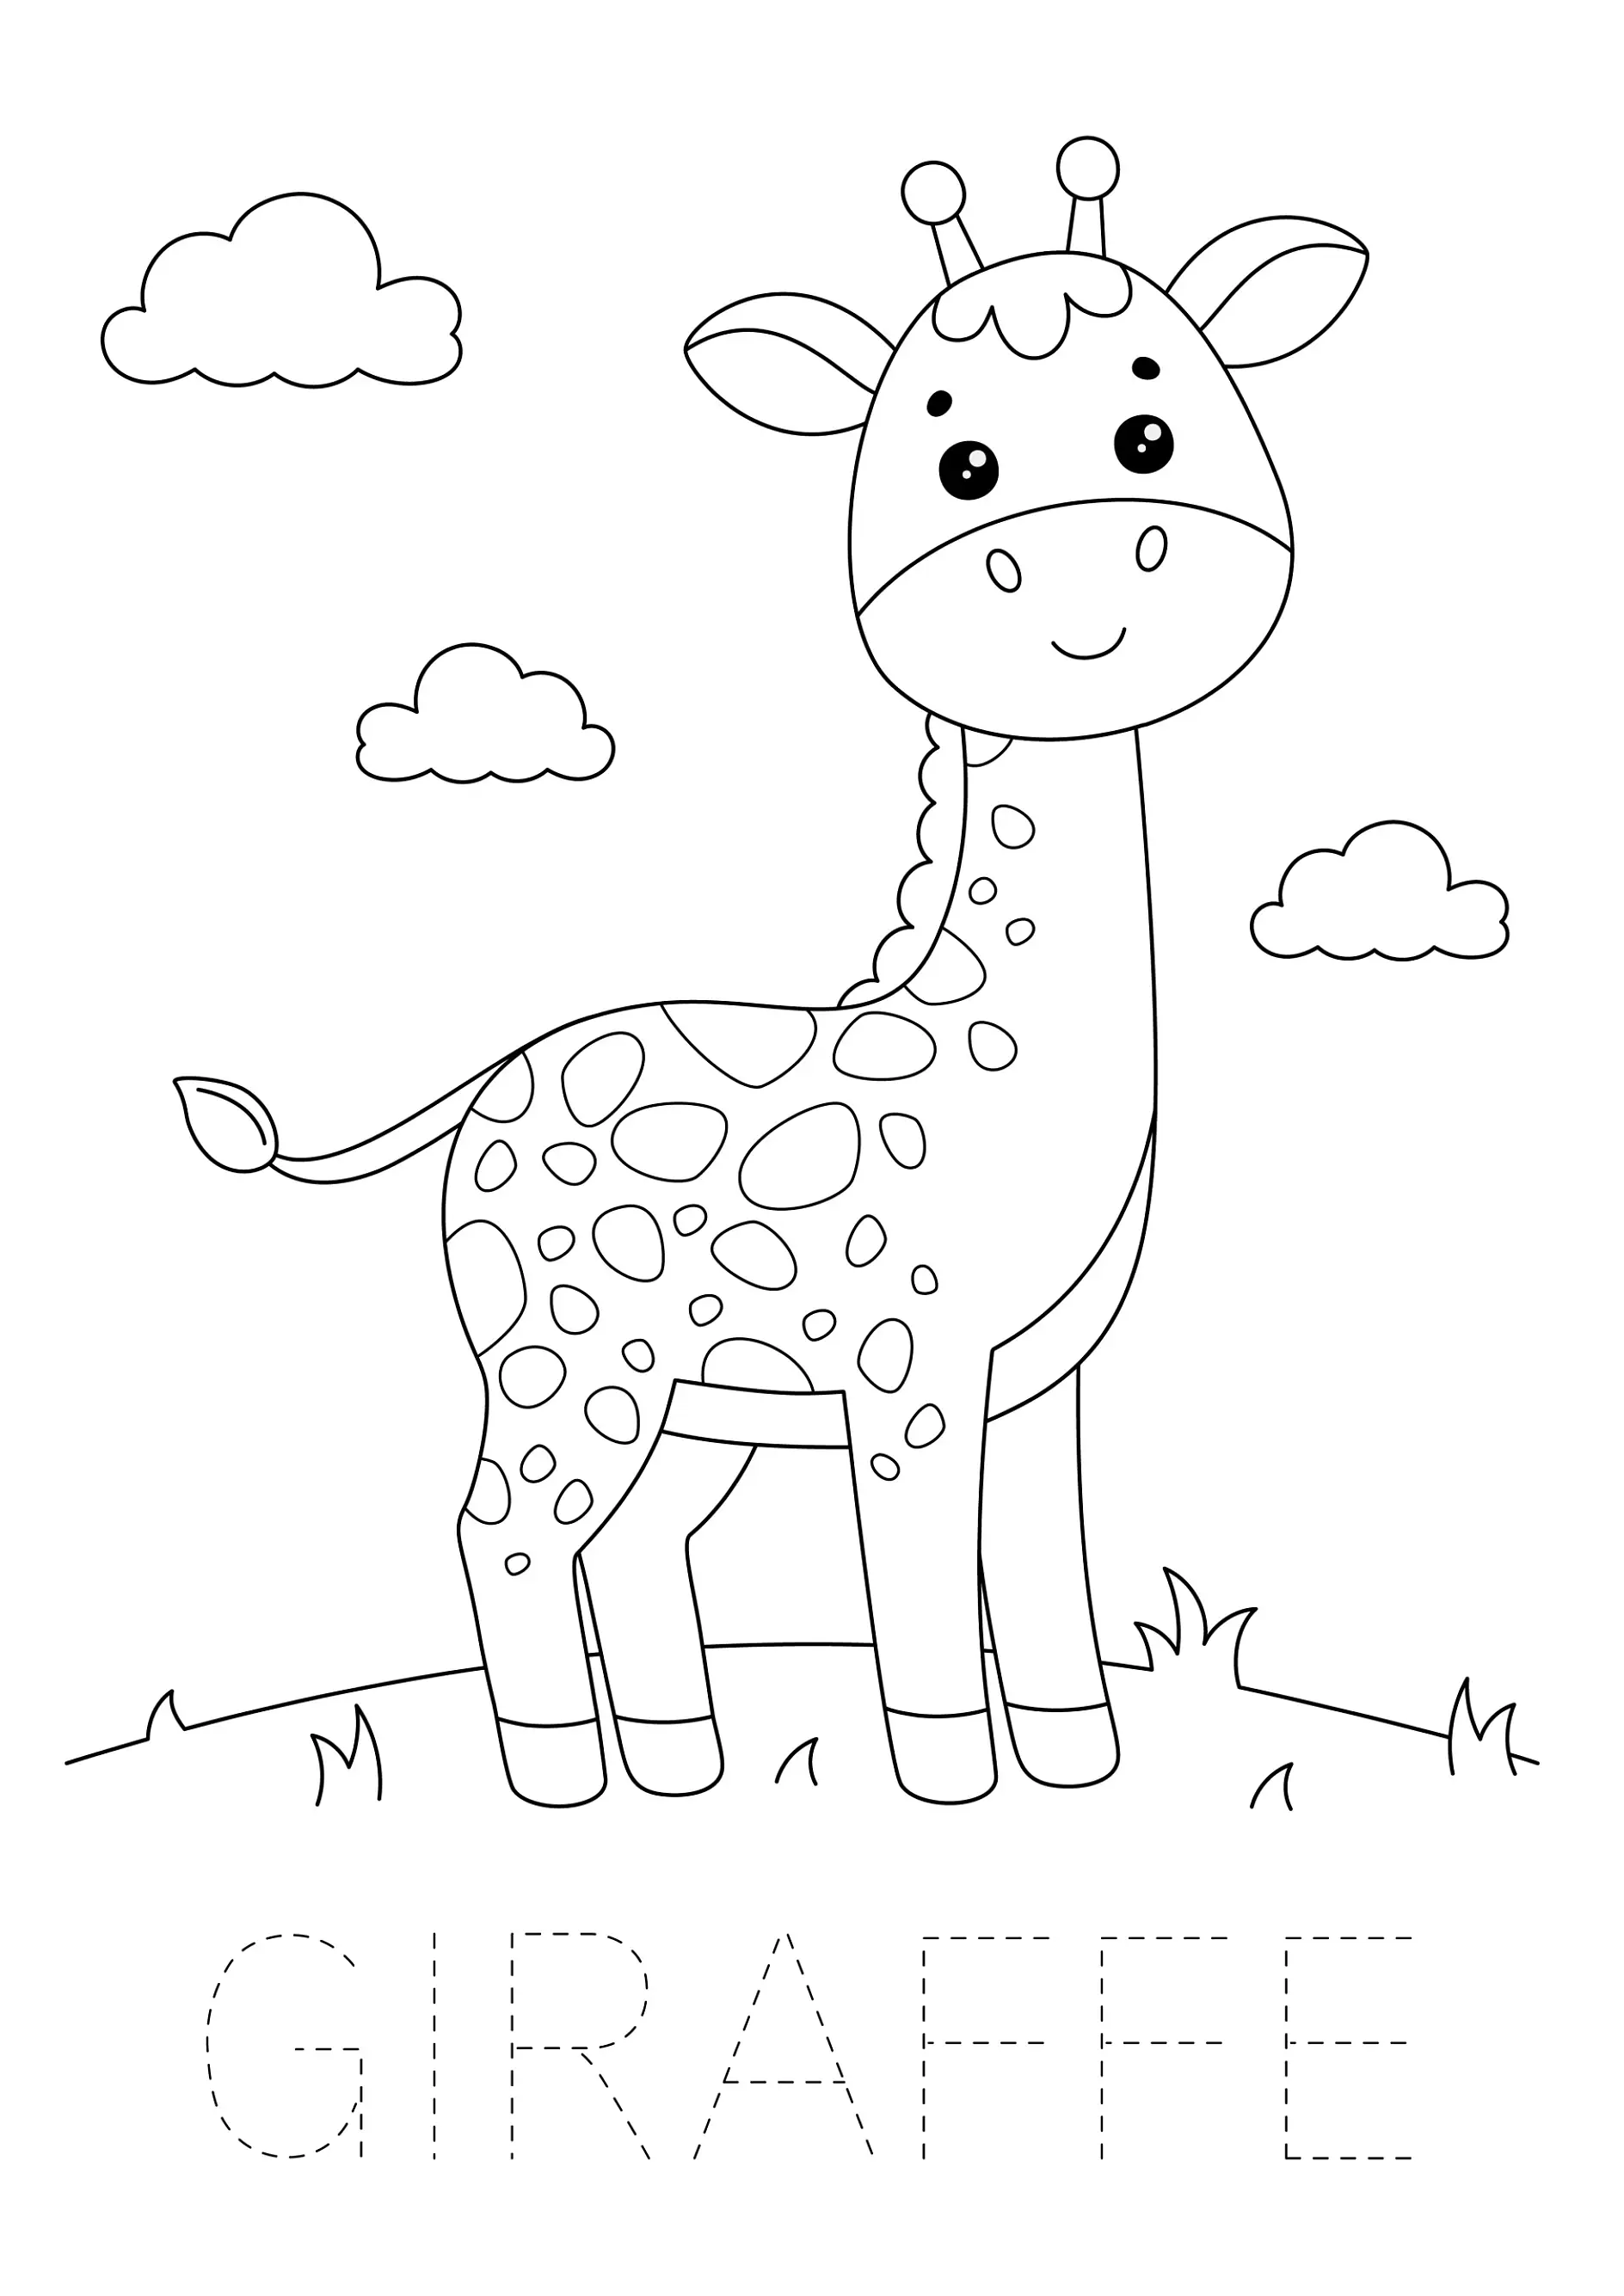 Ausmalbild Giraffe steht auf Wiese mit Wolken im Hintergrund